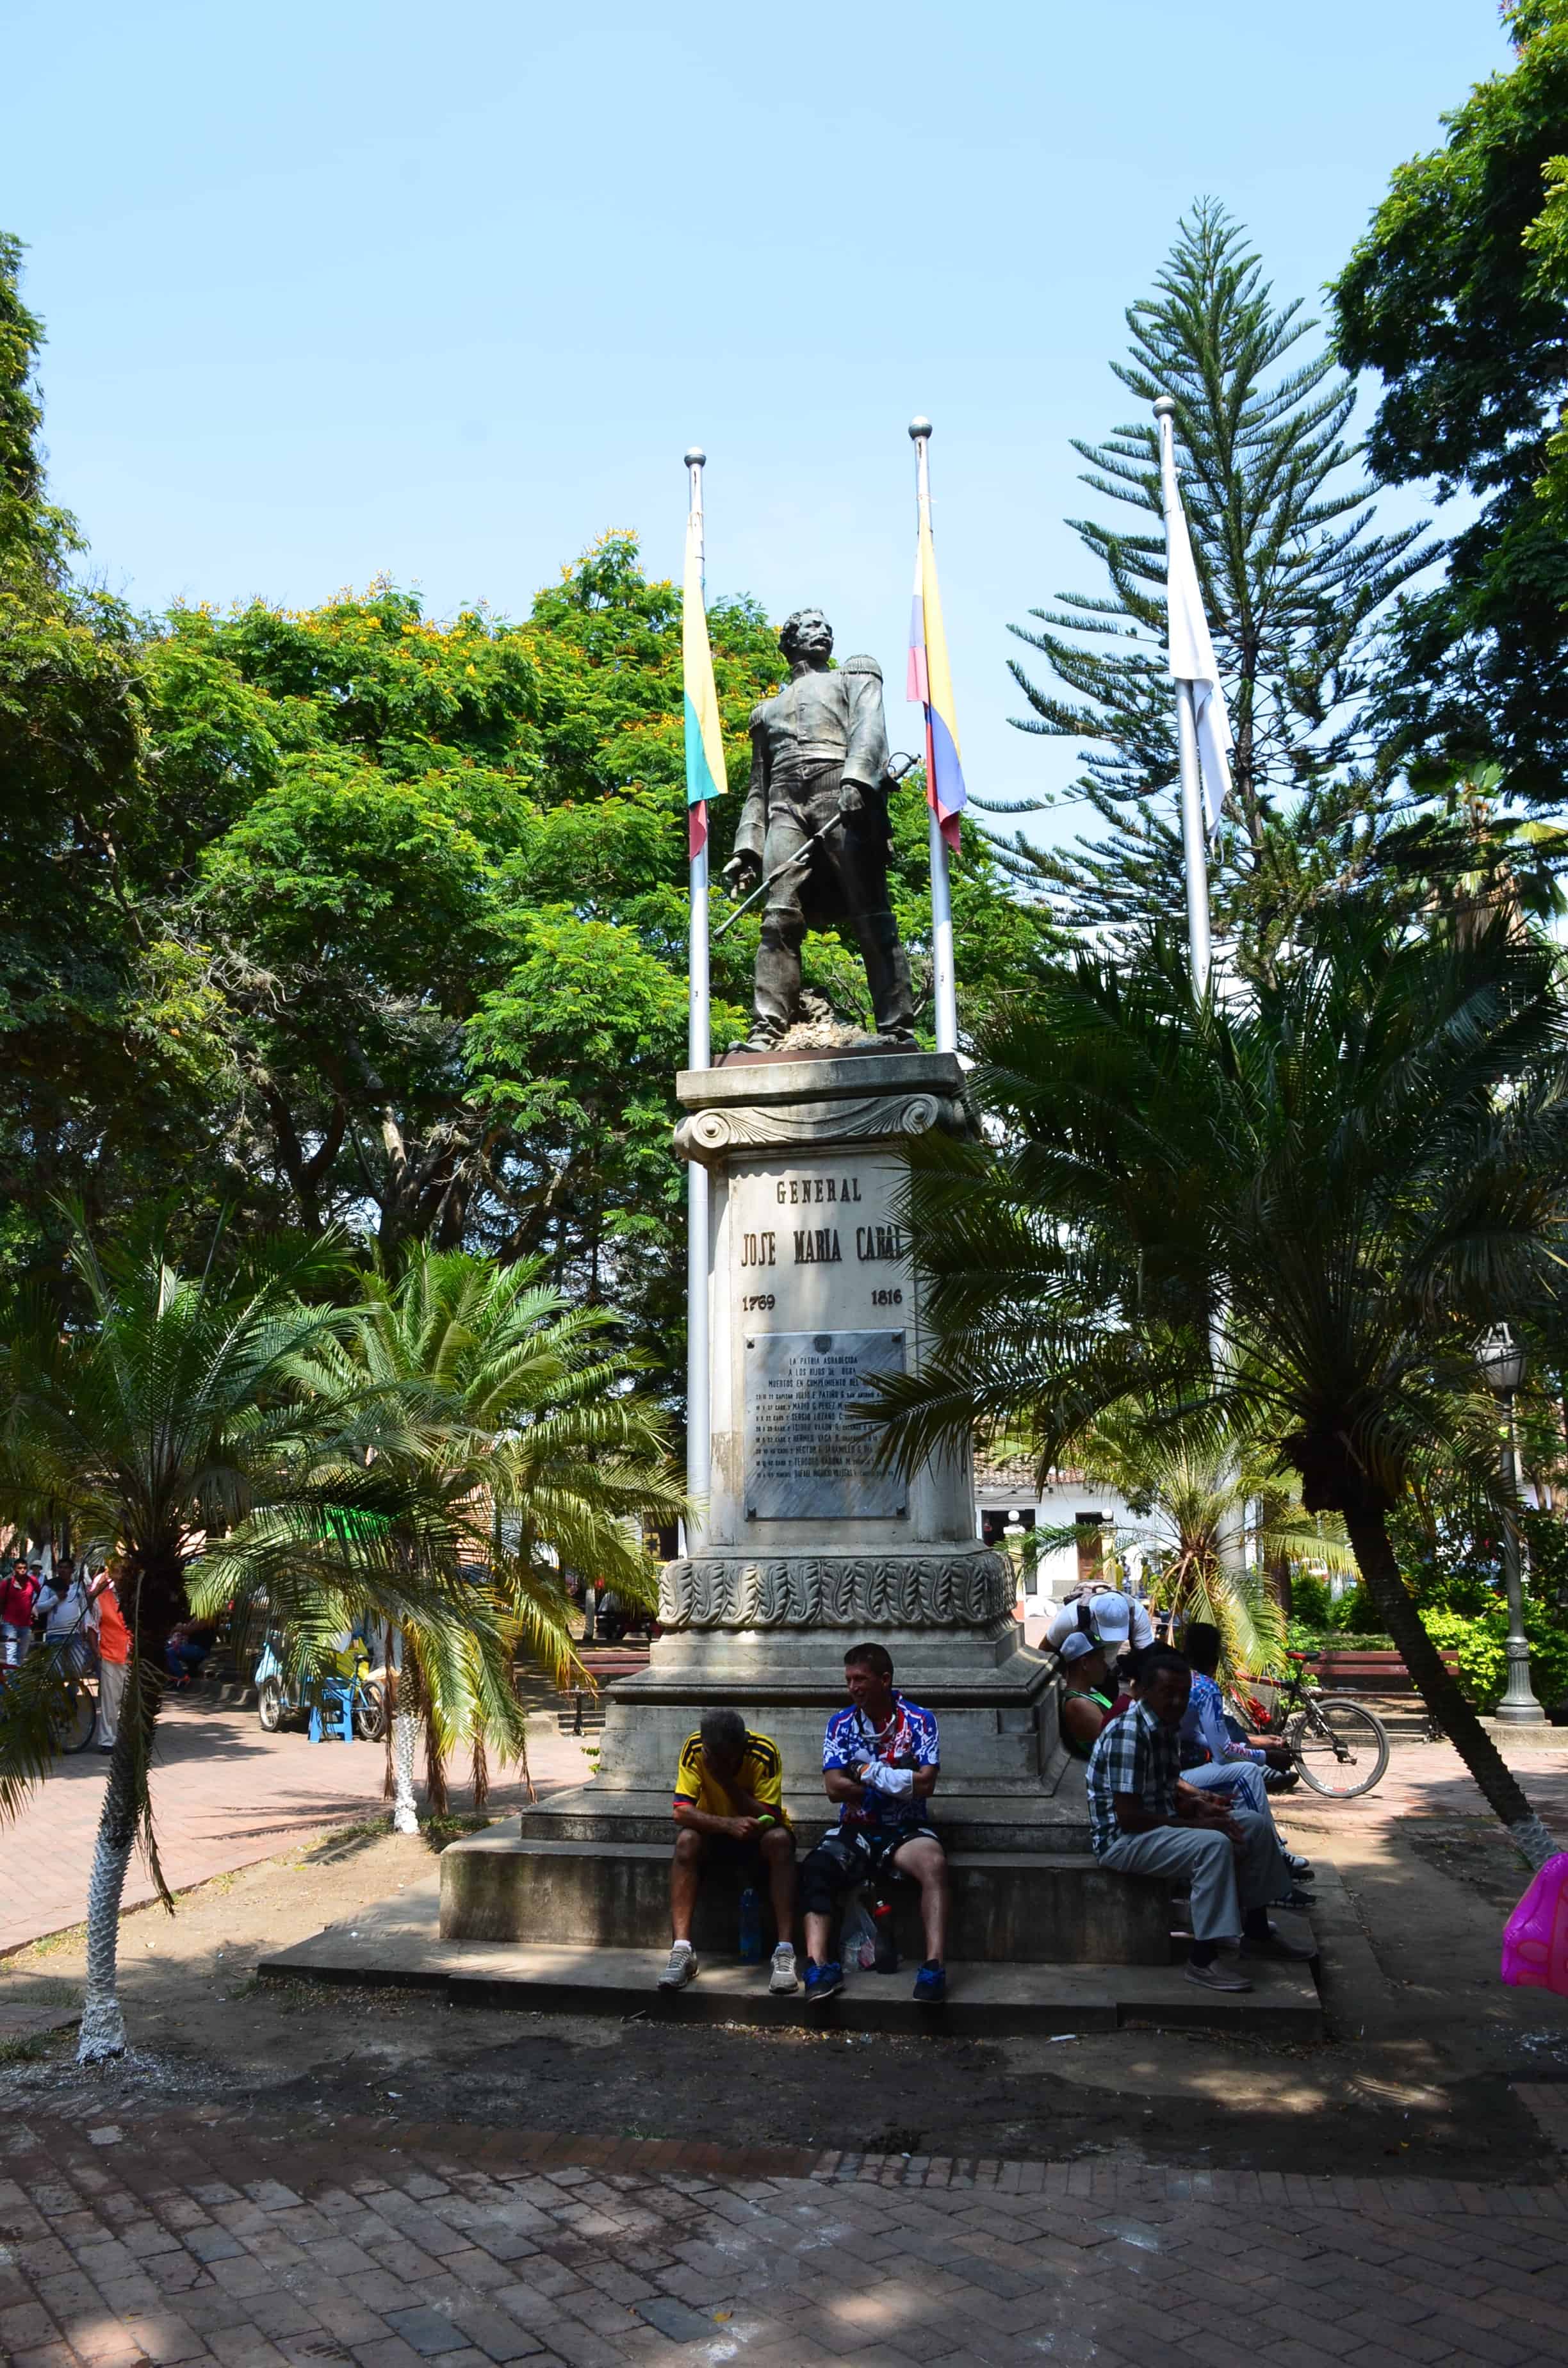 José María Cabal monument